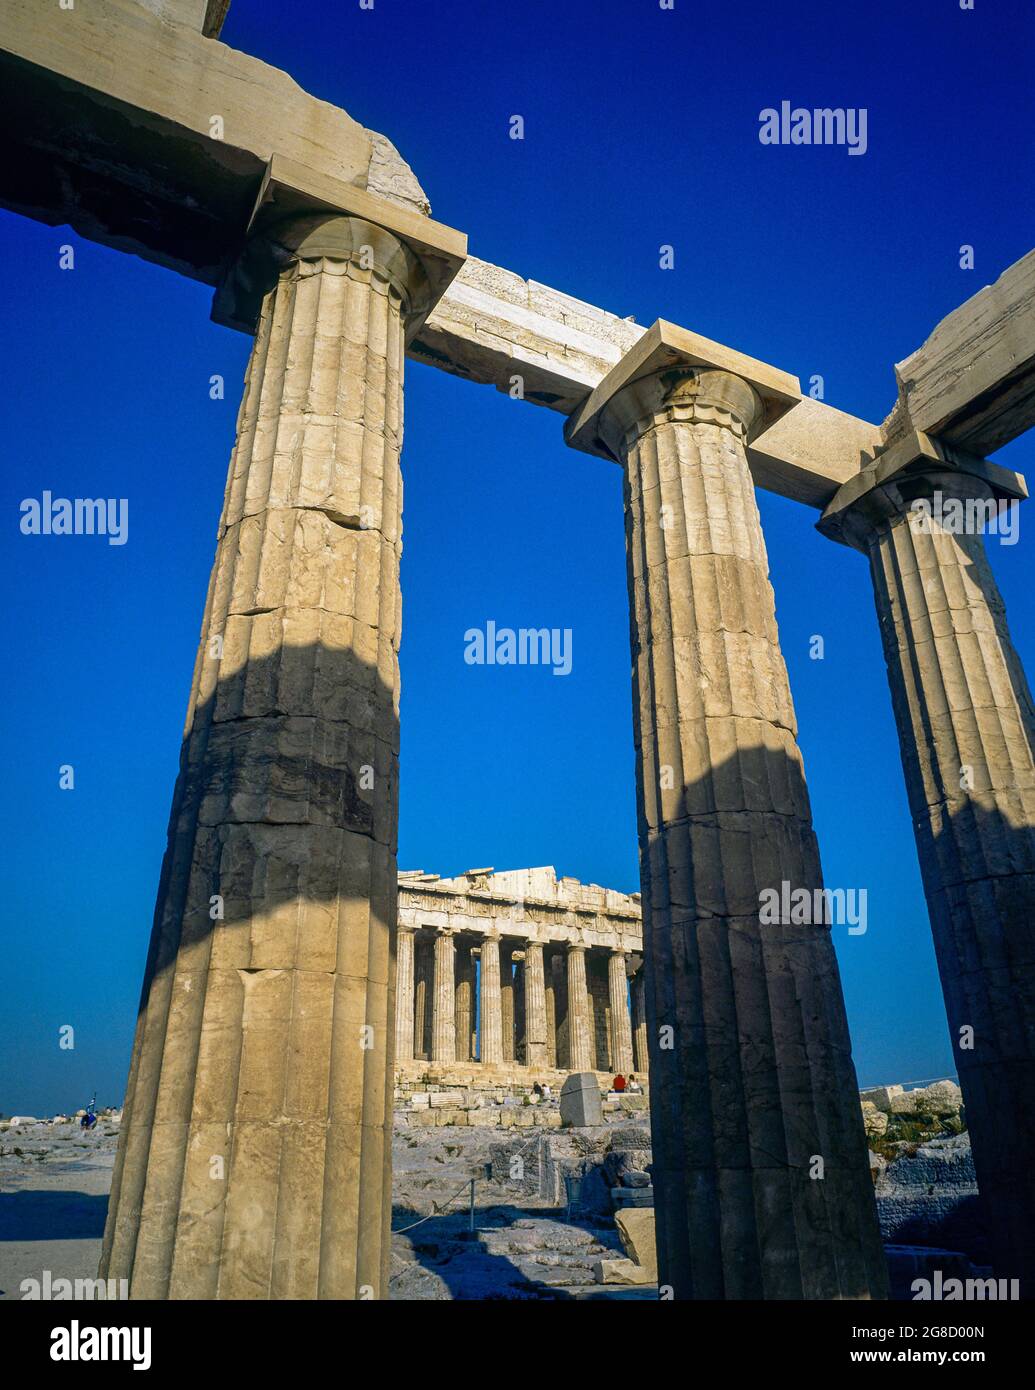 Athen, Kolonnade mit dorischen Säulen, Parthenon-Tempel, Akropolis-Hügel, Griechenland, Europa, Stockfoto